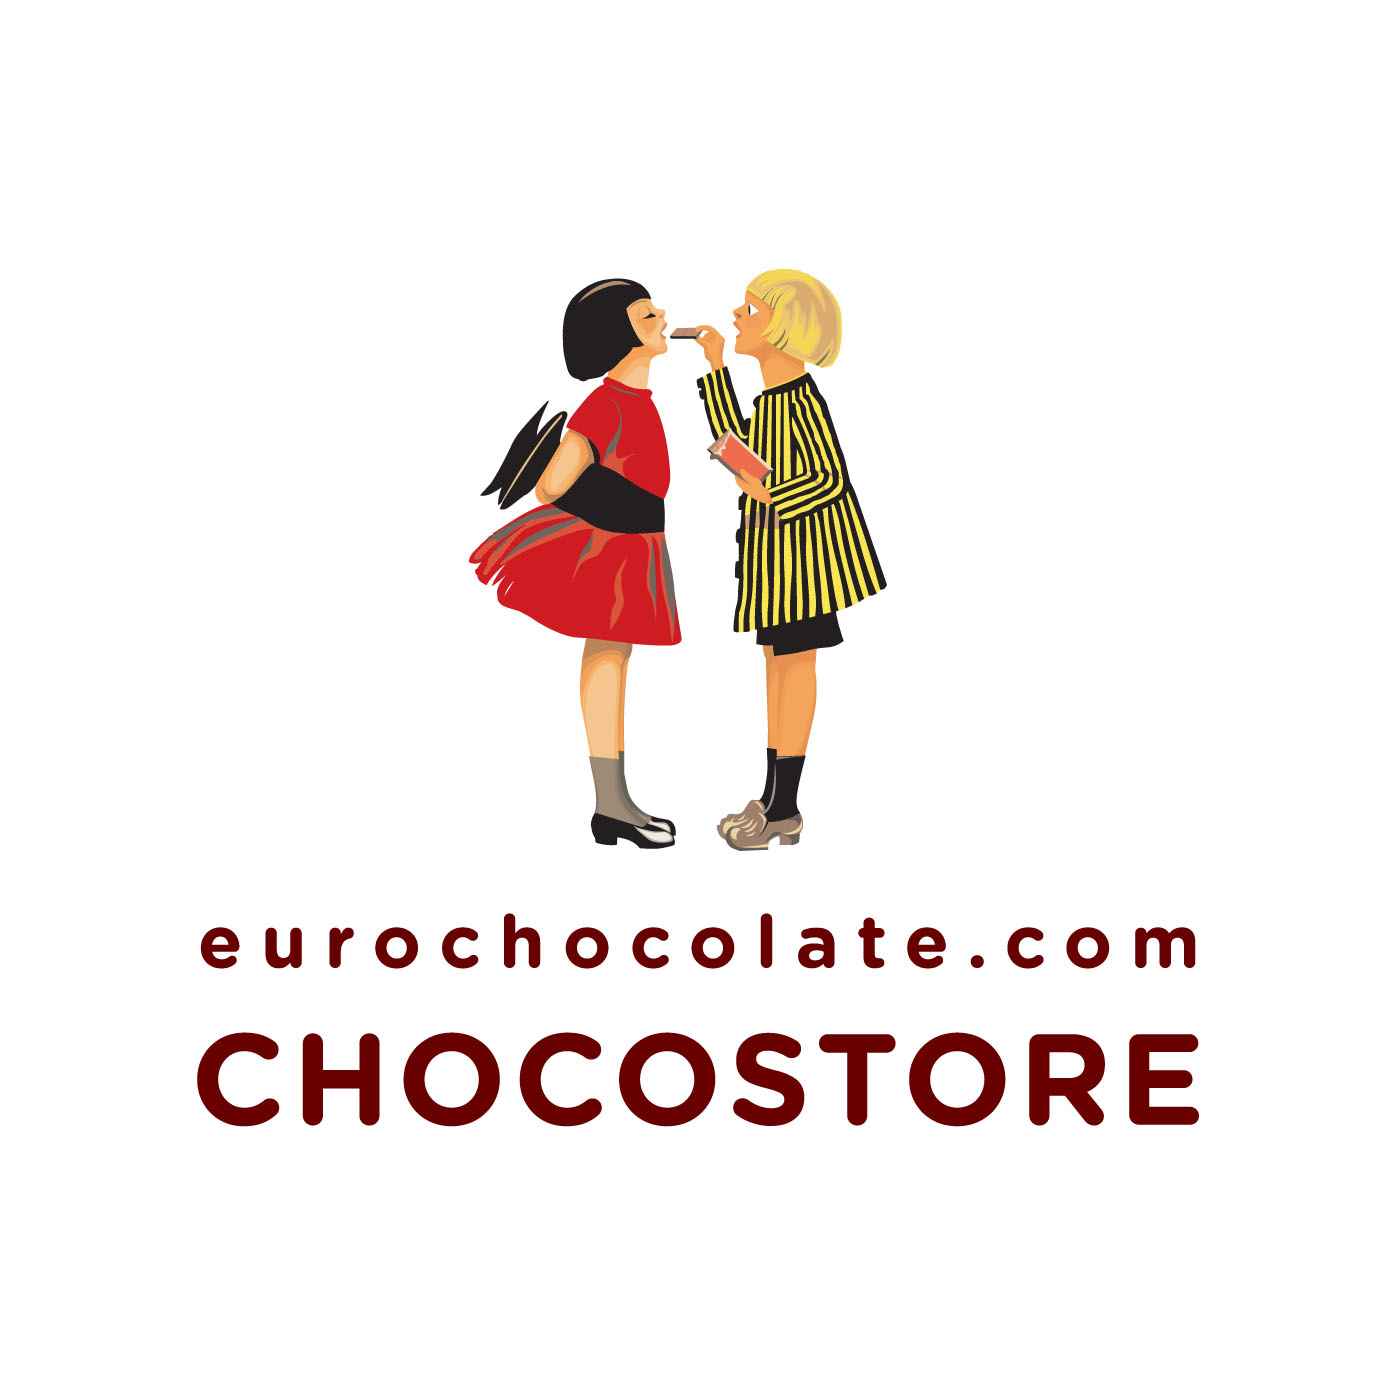 Sia lode al cioccolato! Il Chocostore by Eurochocolate apre ad Assisi